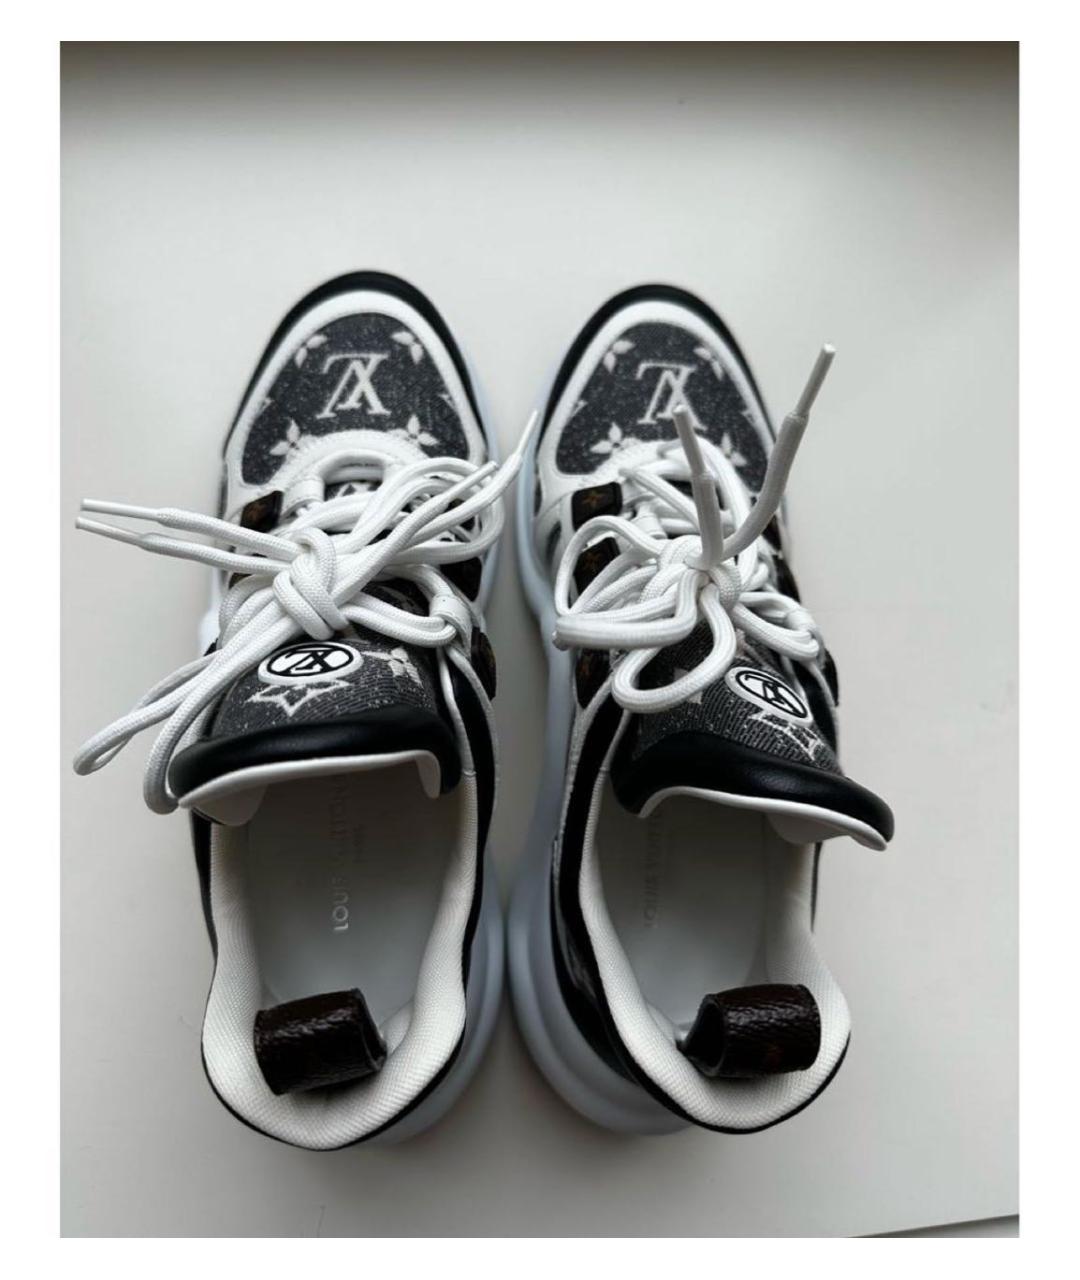 LOUIS VUITTON PRE-OWNED Кожаные кроссовки, фото 2